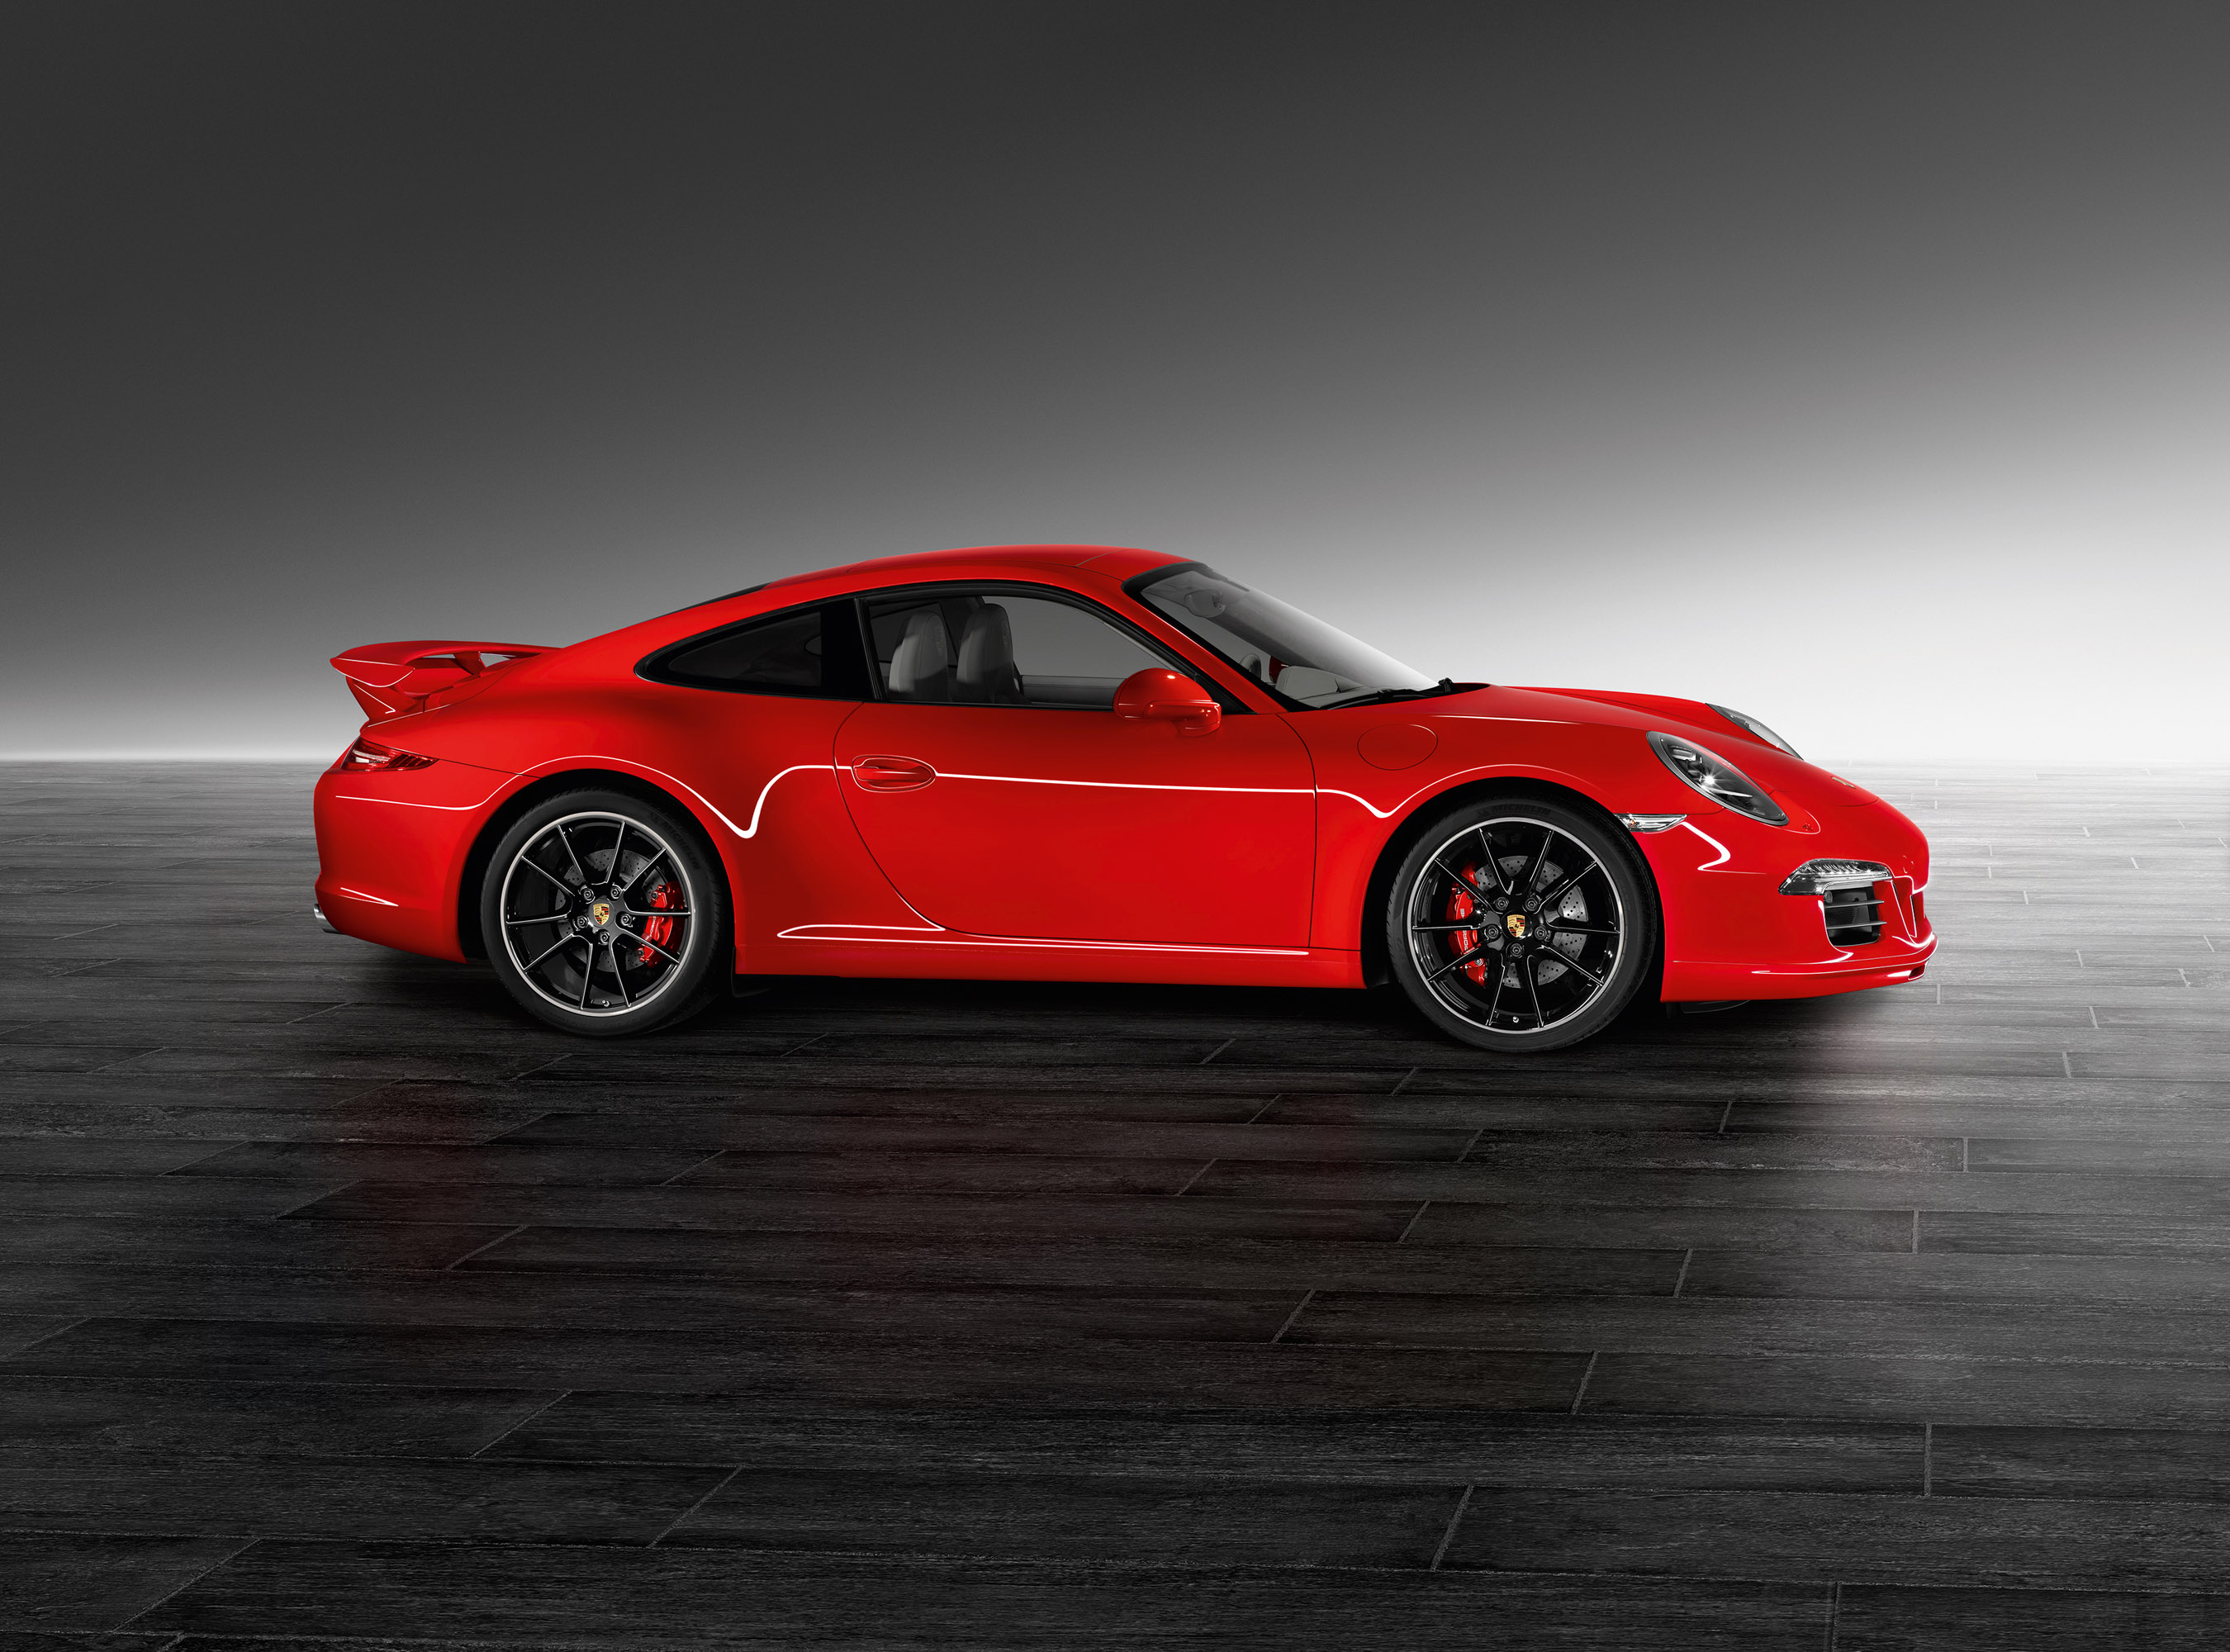 Porsche Exclusive Program 911 Carrera S